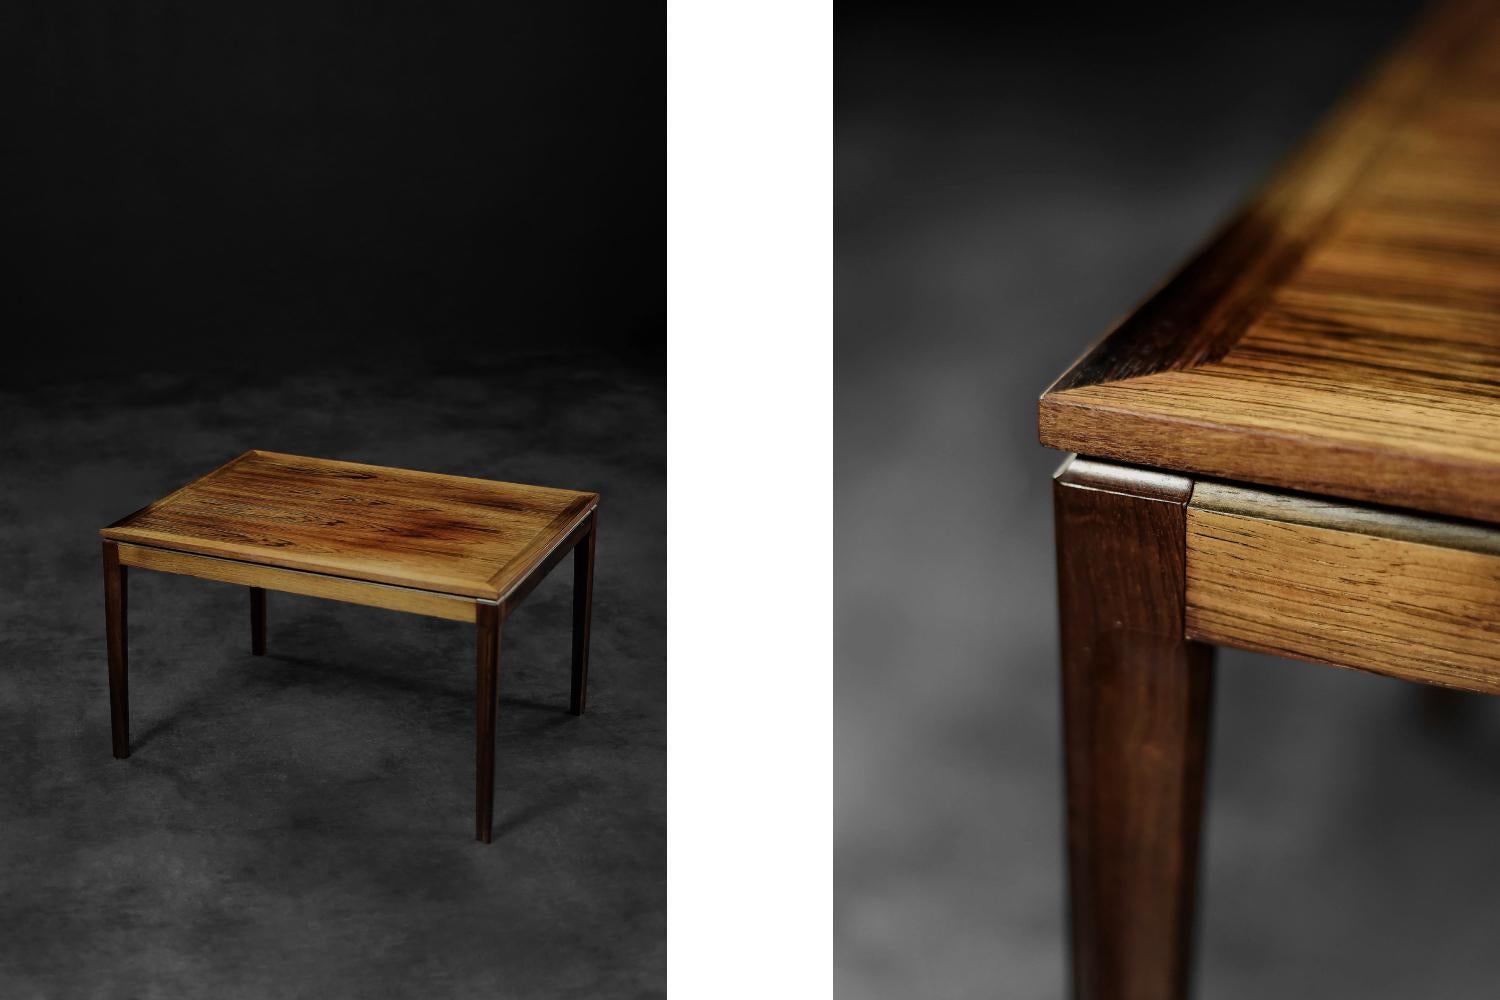 Dieser niedrige Couchtisch wurde in den 1960er Jahren in Dänemark hergestellt. Der geometrische Tisch ist aus edlem Palisanderholz in einem dunklen Braunton mit sichtbarer, reicher Maserung gefertigt. Der Sockel besteht aus schlanken, geschnitzten